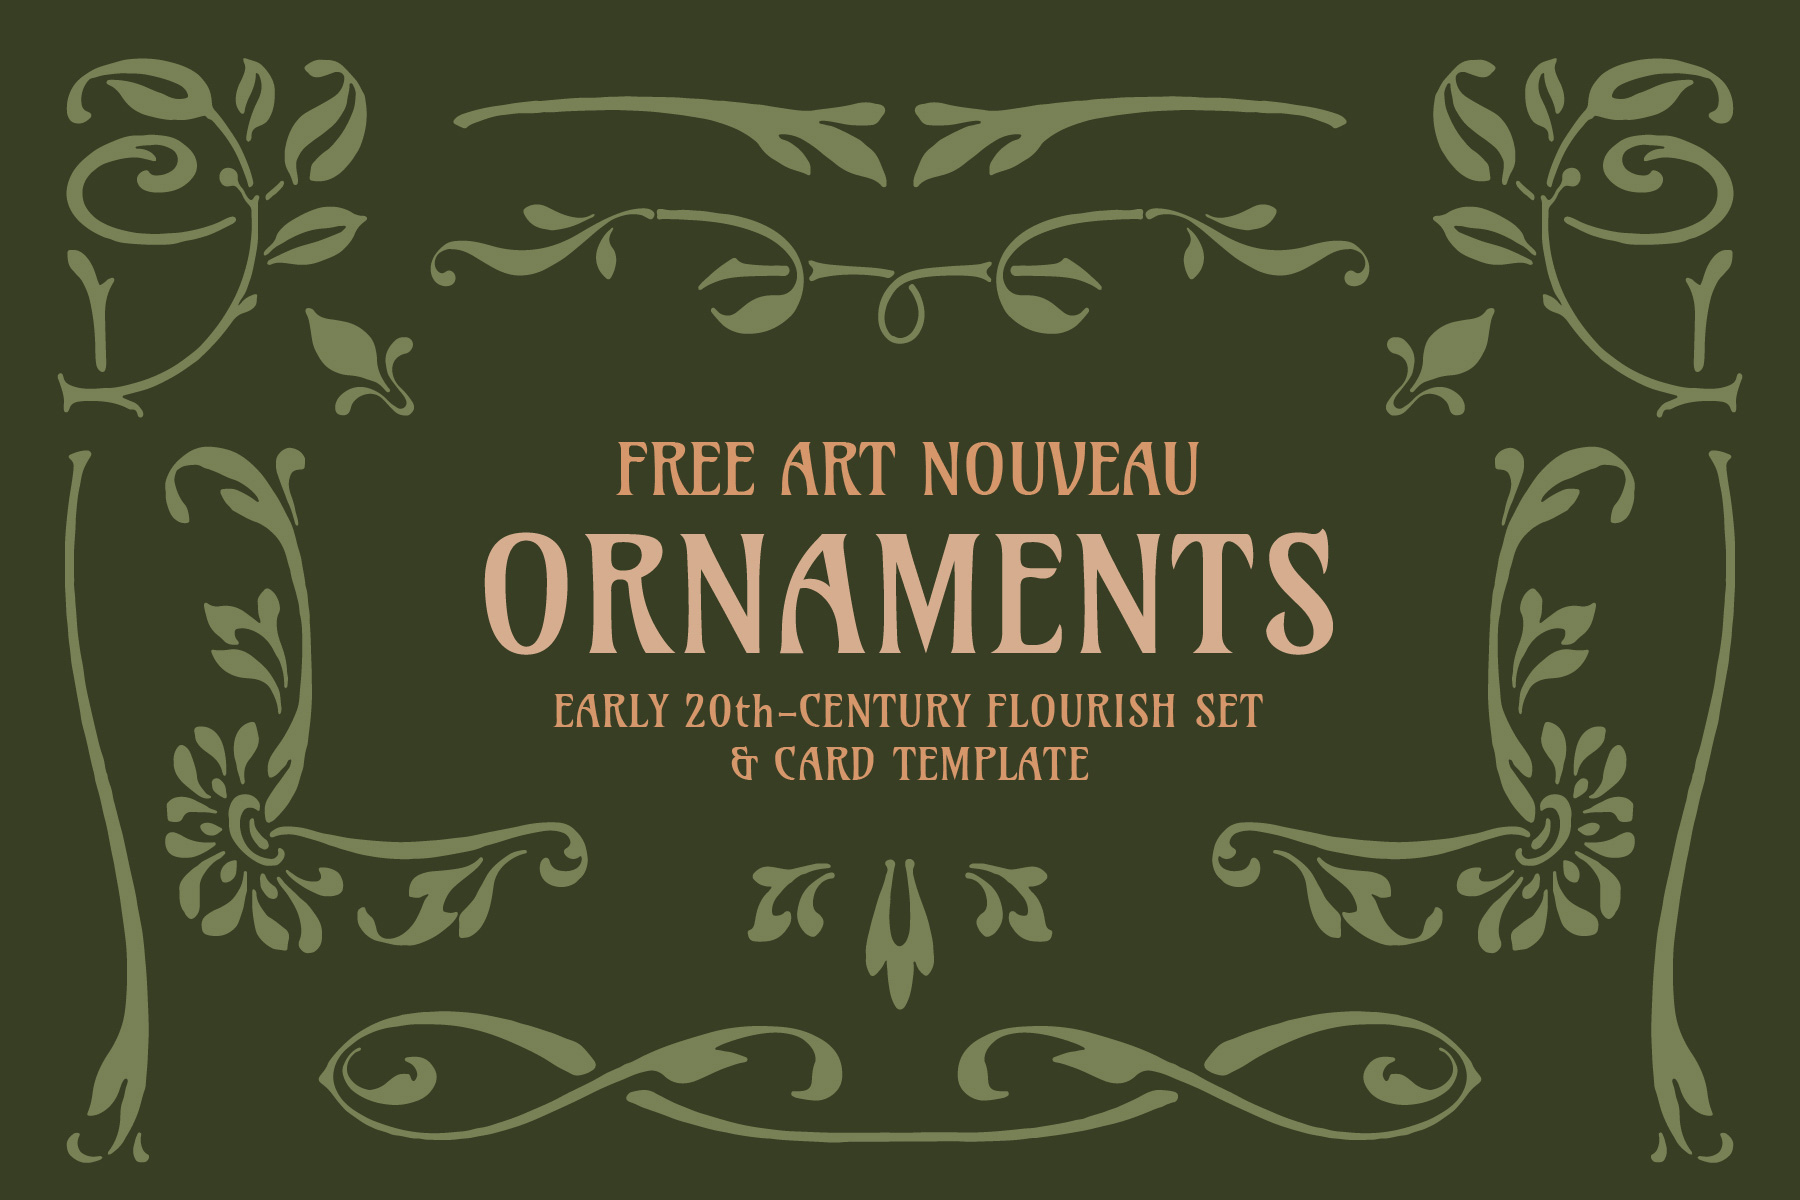 Free Art Nouveau Ornaments-01